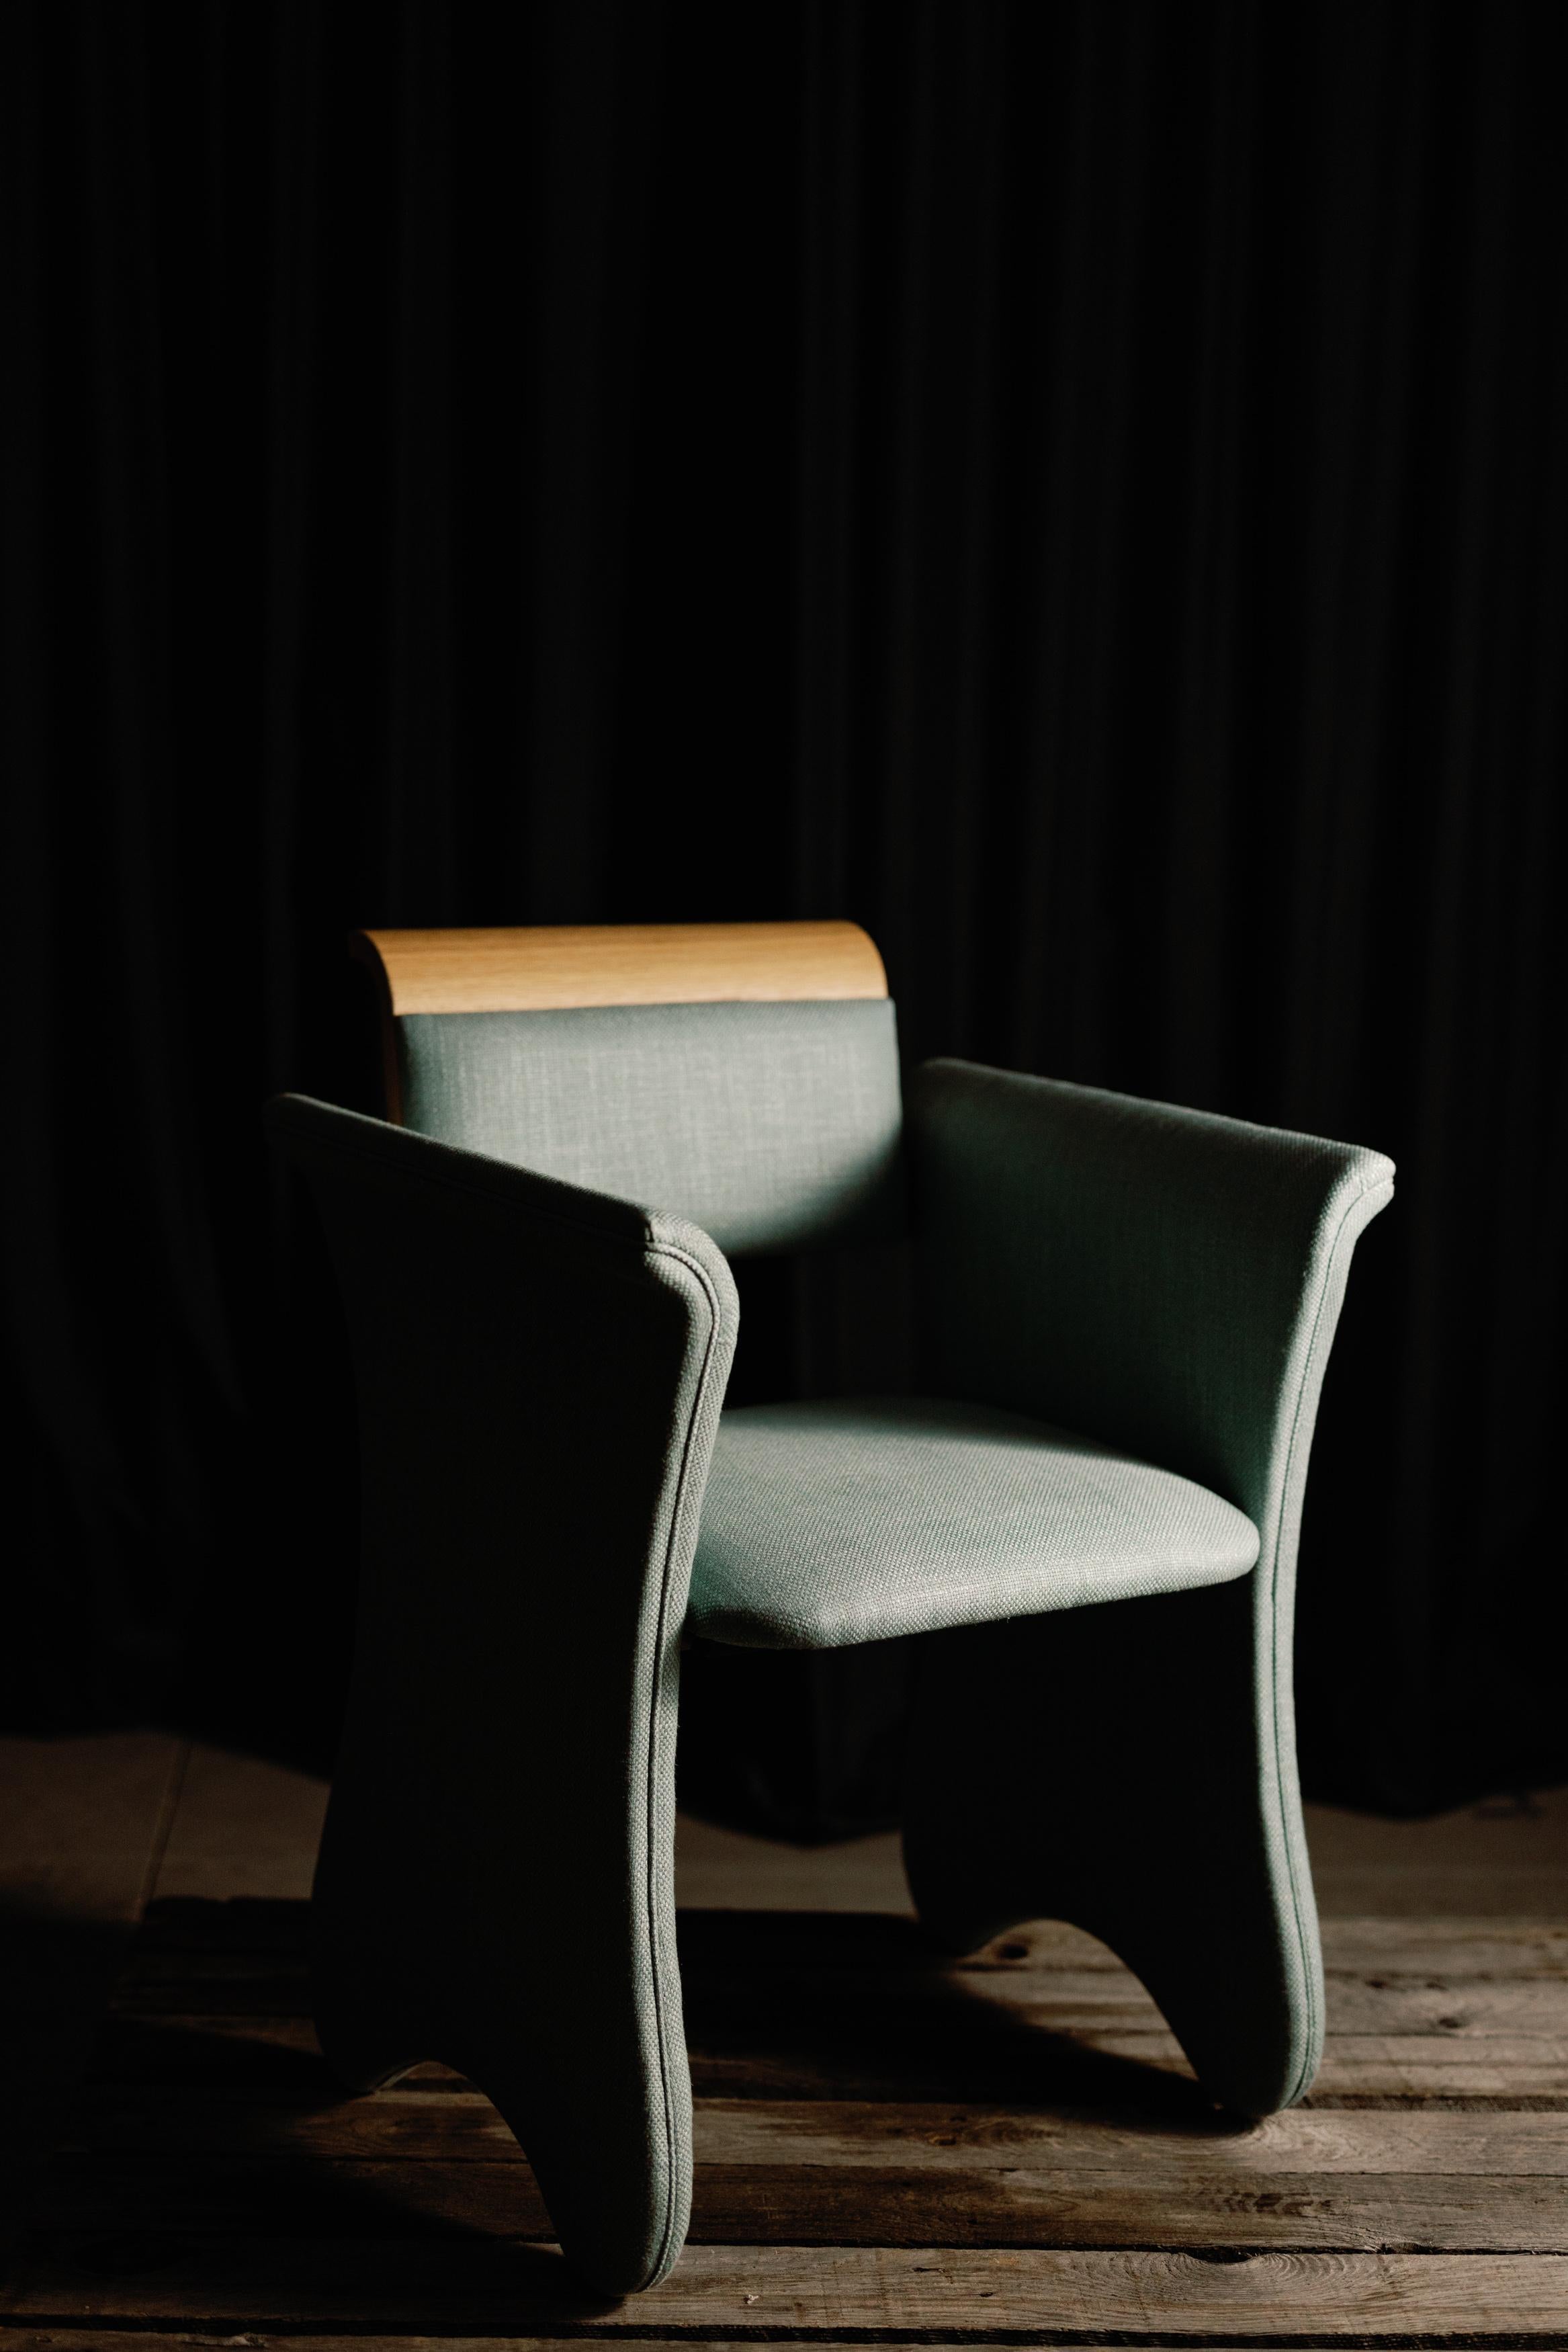 Zeitloser Stuhl, Contemporary Collection, handgefertigt in Portugal - Europa von Greenapple.

Der zeitlose, moderne Bürostuhl wurde entworfen und gefertigt, um den Lauf der Zeit zu überdauern und als Begleiter durch ein ganzes Leben voller Wachstum